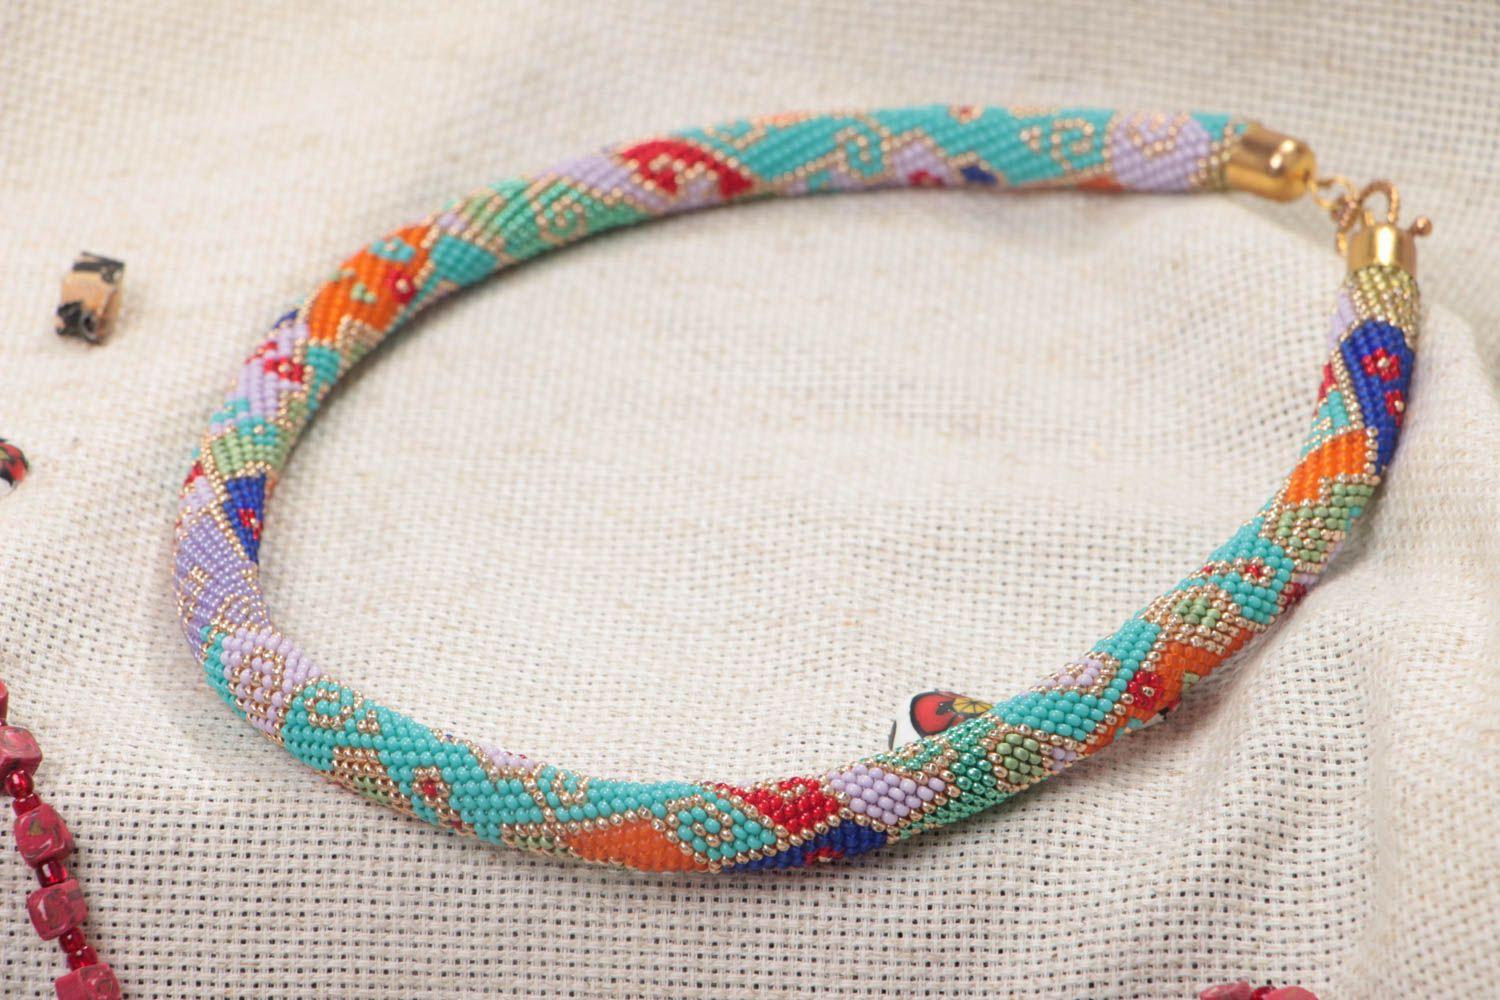 Ожерелье из бисера в форме жгута цветное стильное необычное модное ручной работы фото 1